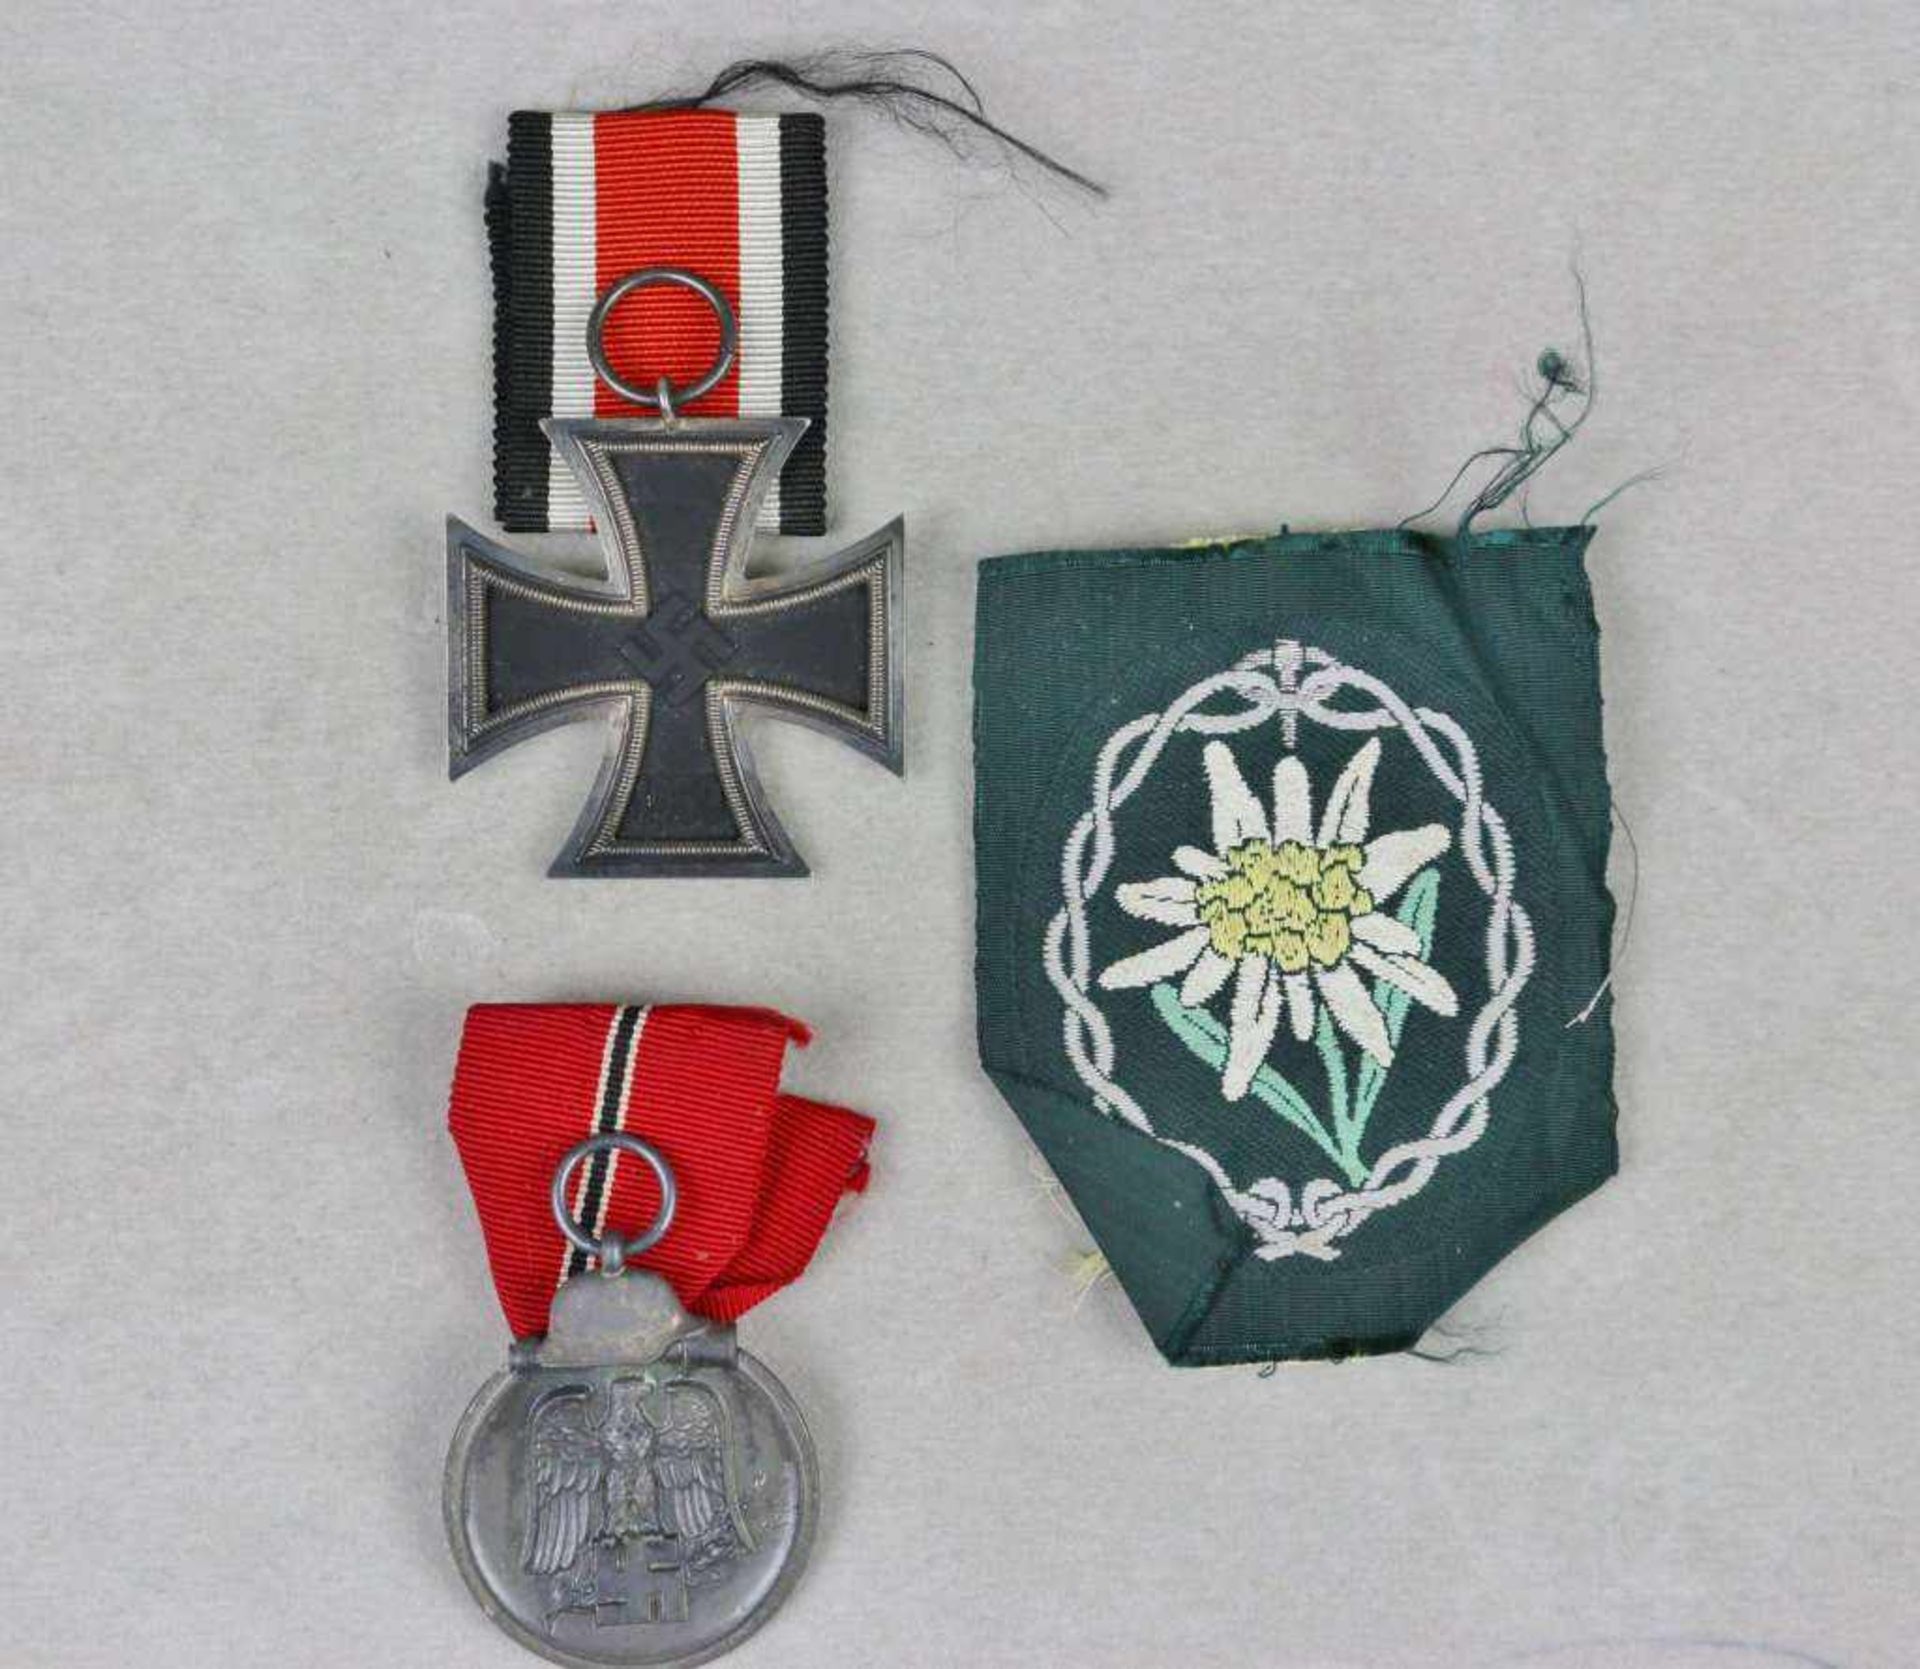 Eisernes Kreuz 2. Klasse 1939 am Band, Ostmedaille sowie Stoffabzeichen der Gebirgsjäger. - Bild 2 aus 2